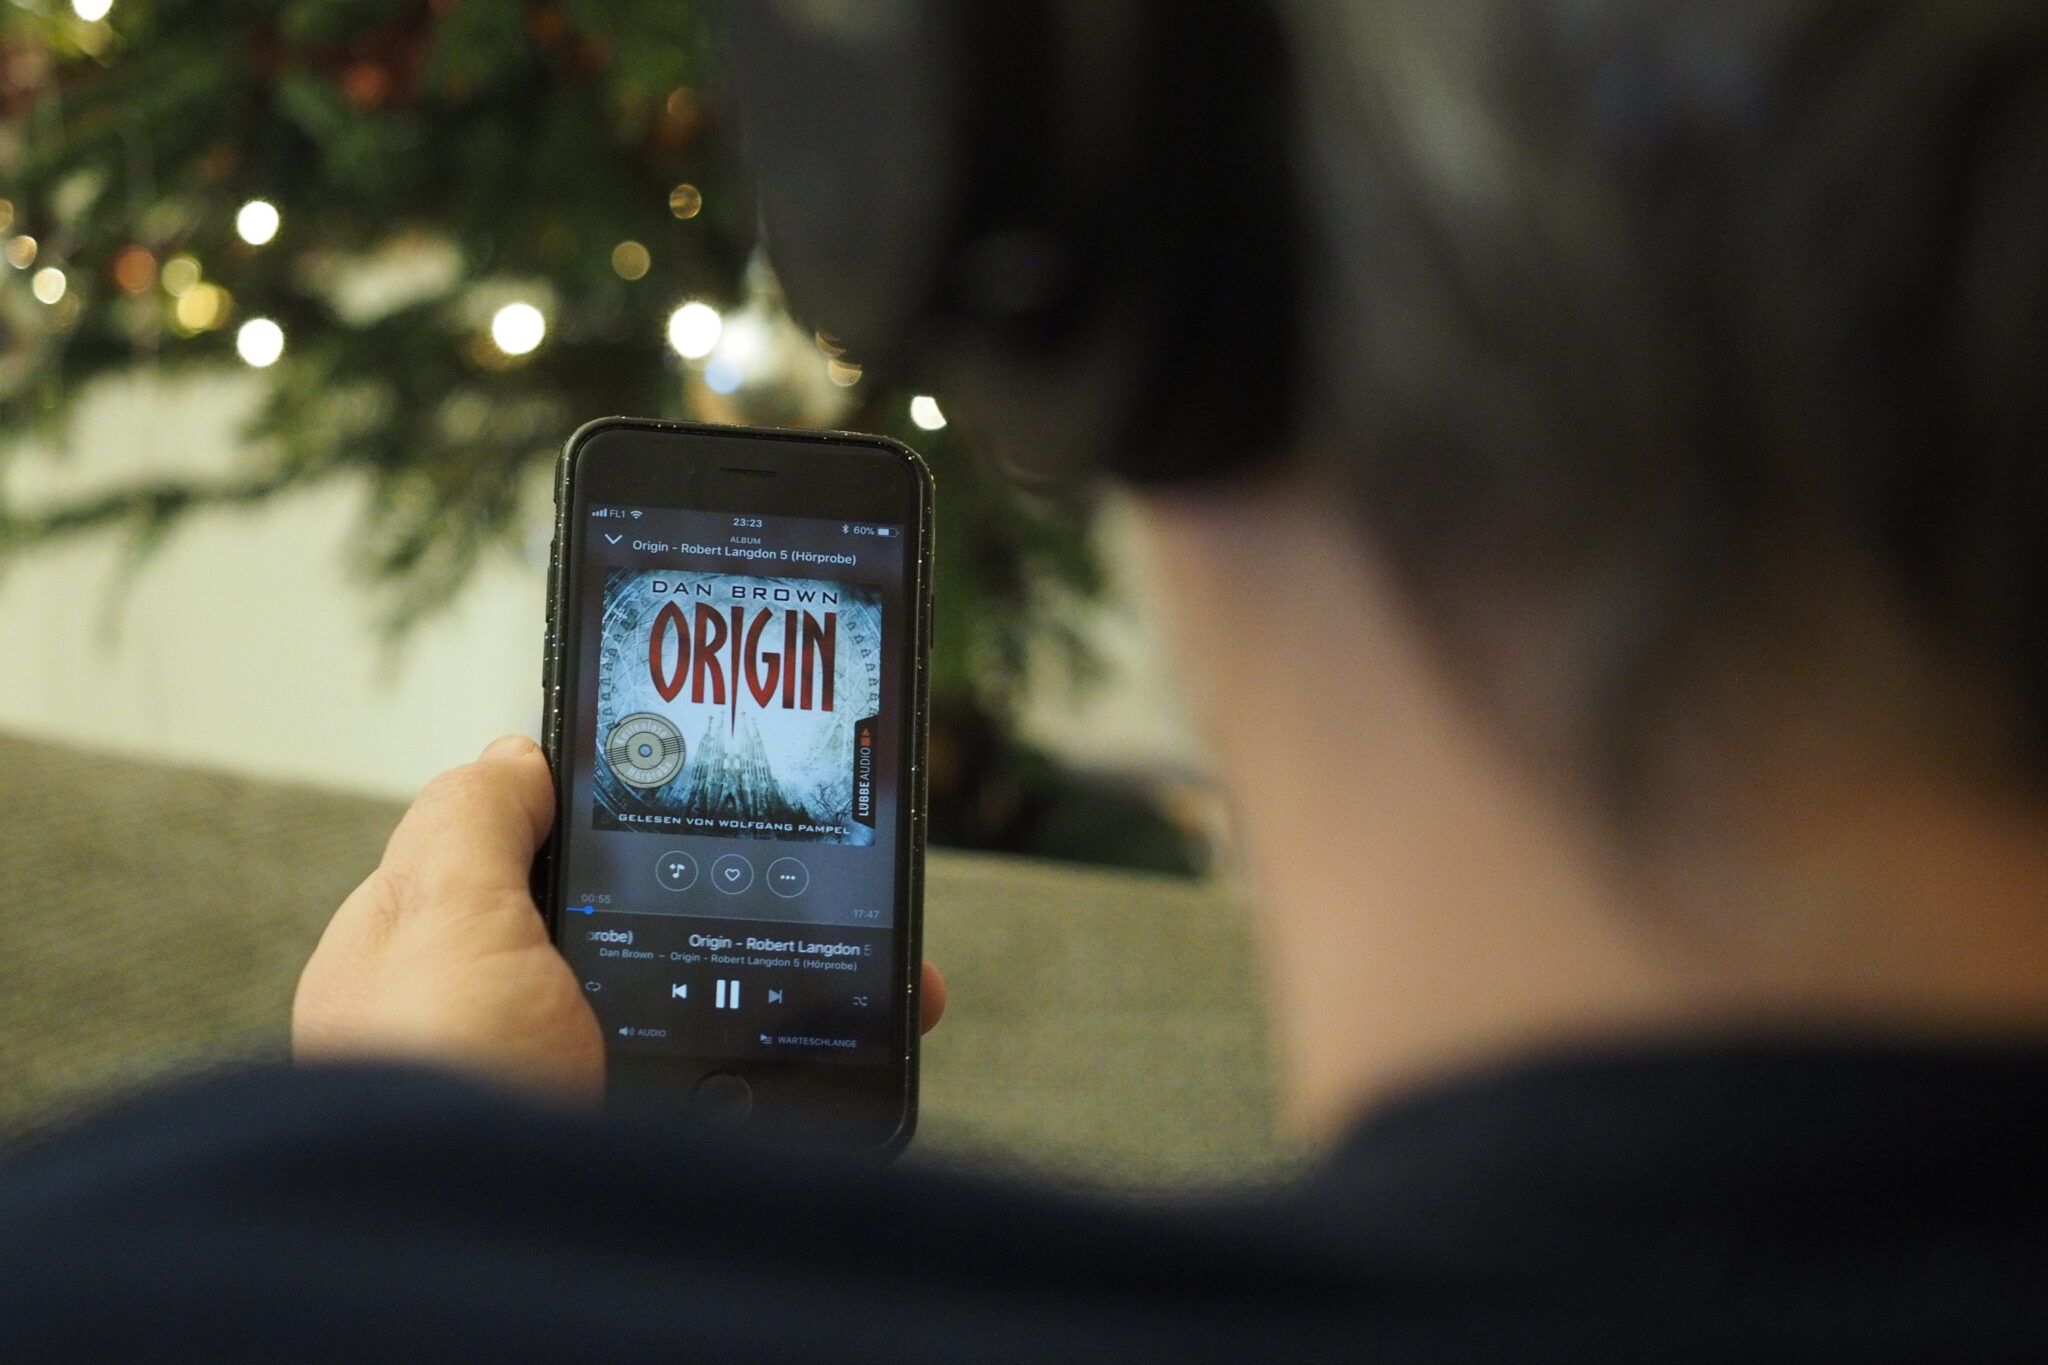 Mann mit Kopfhörern sieht sich das Cover des Hörbuchs Origin von Dan Brown am Smartphone an